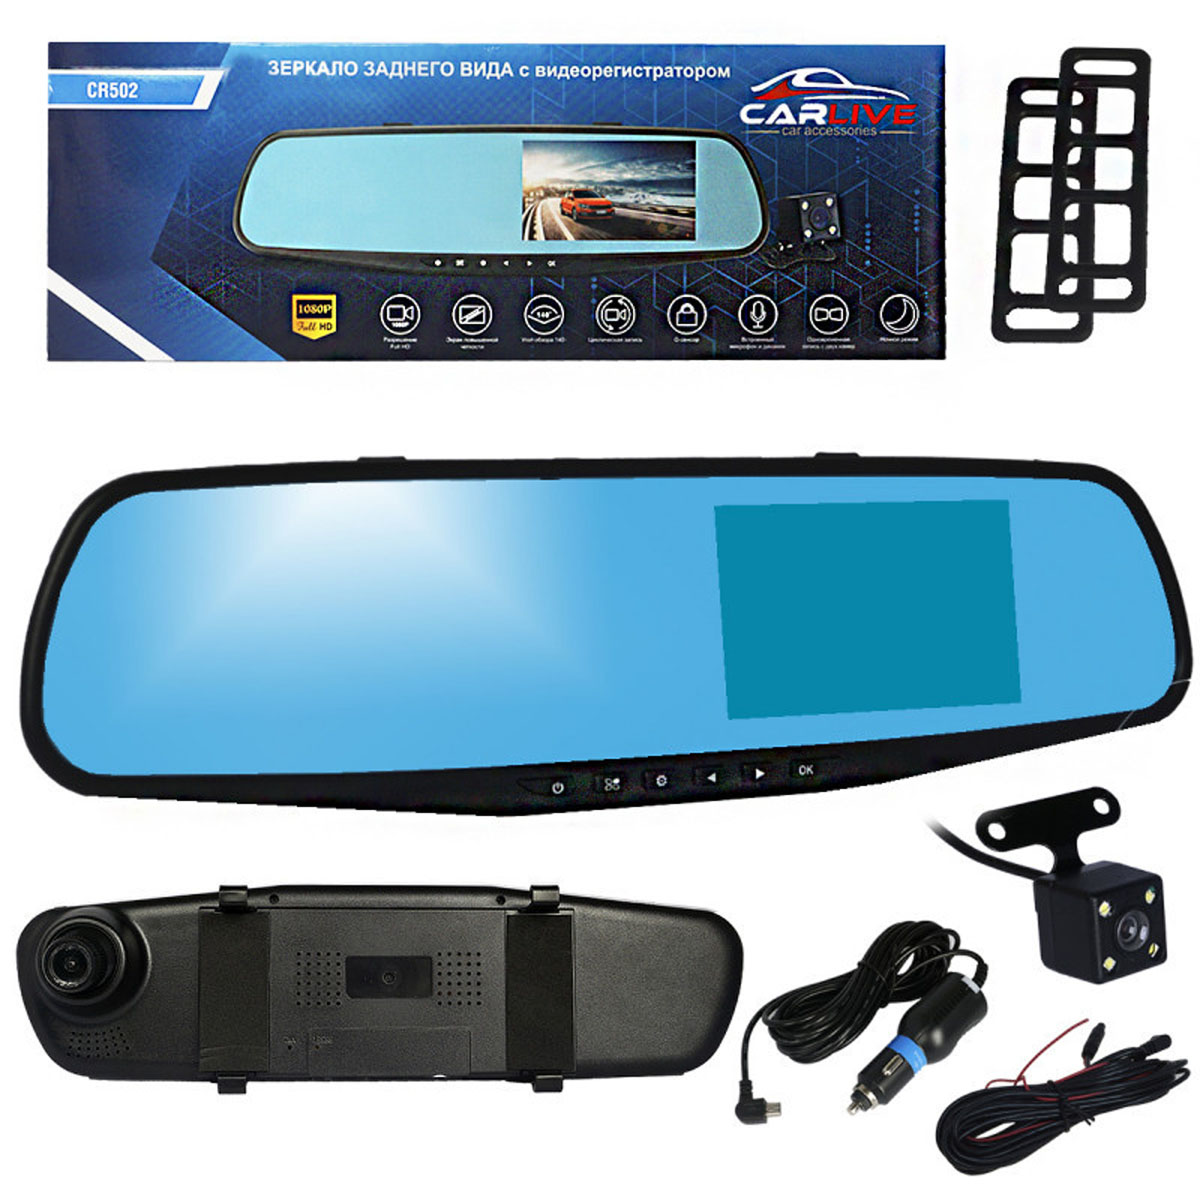 Автомобильное зеркало видеорегистратор CARLIVE CR502, две камеры, цвет черный